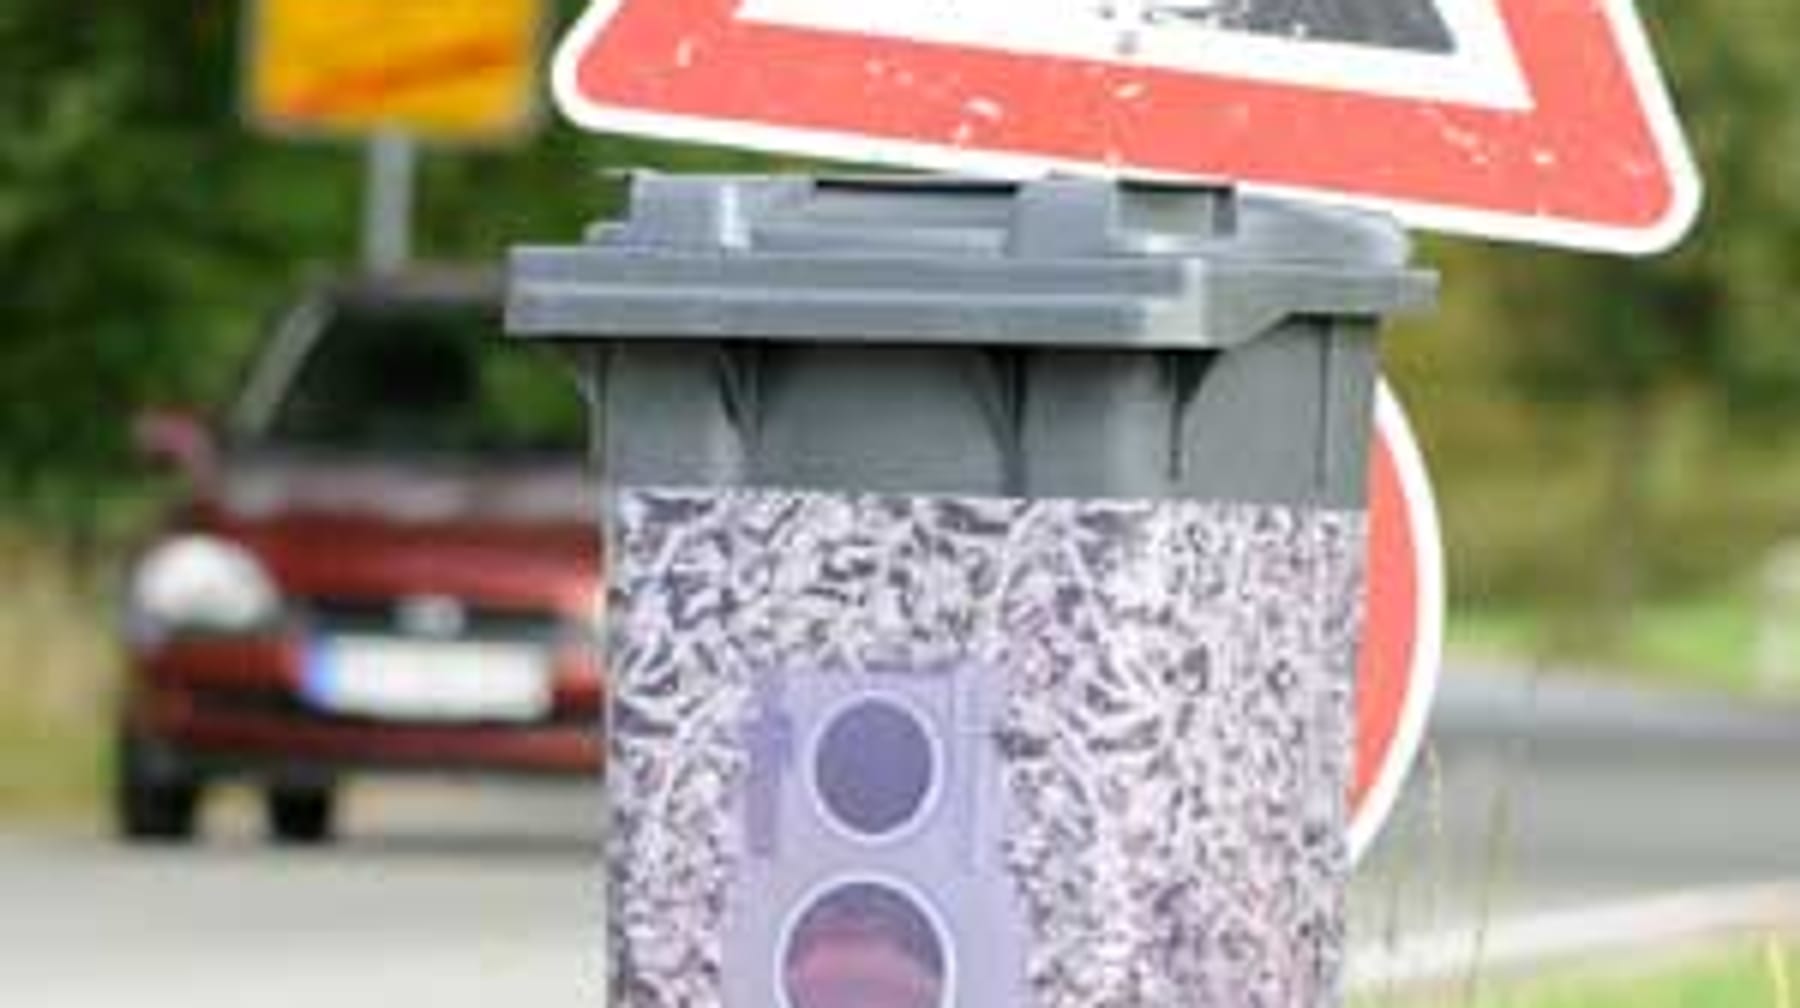 Mülleimer stinkt: So werden Sie den Geruch los